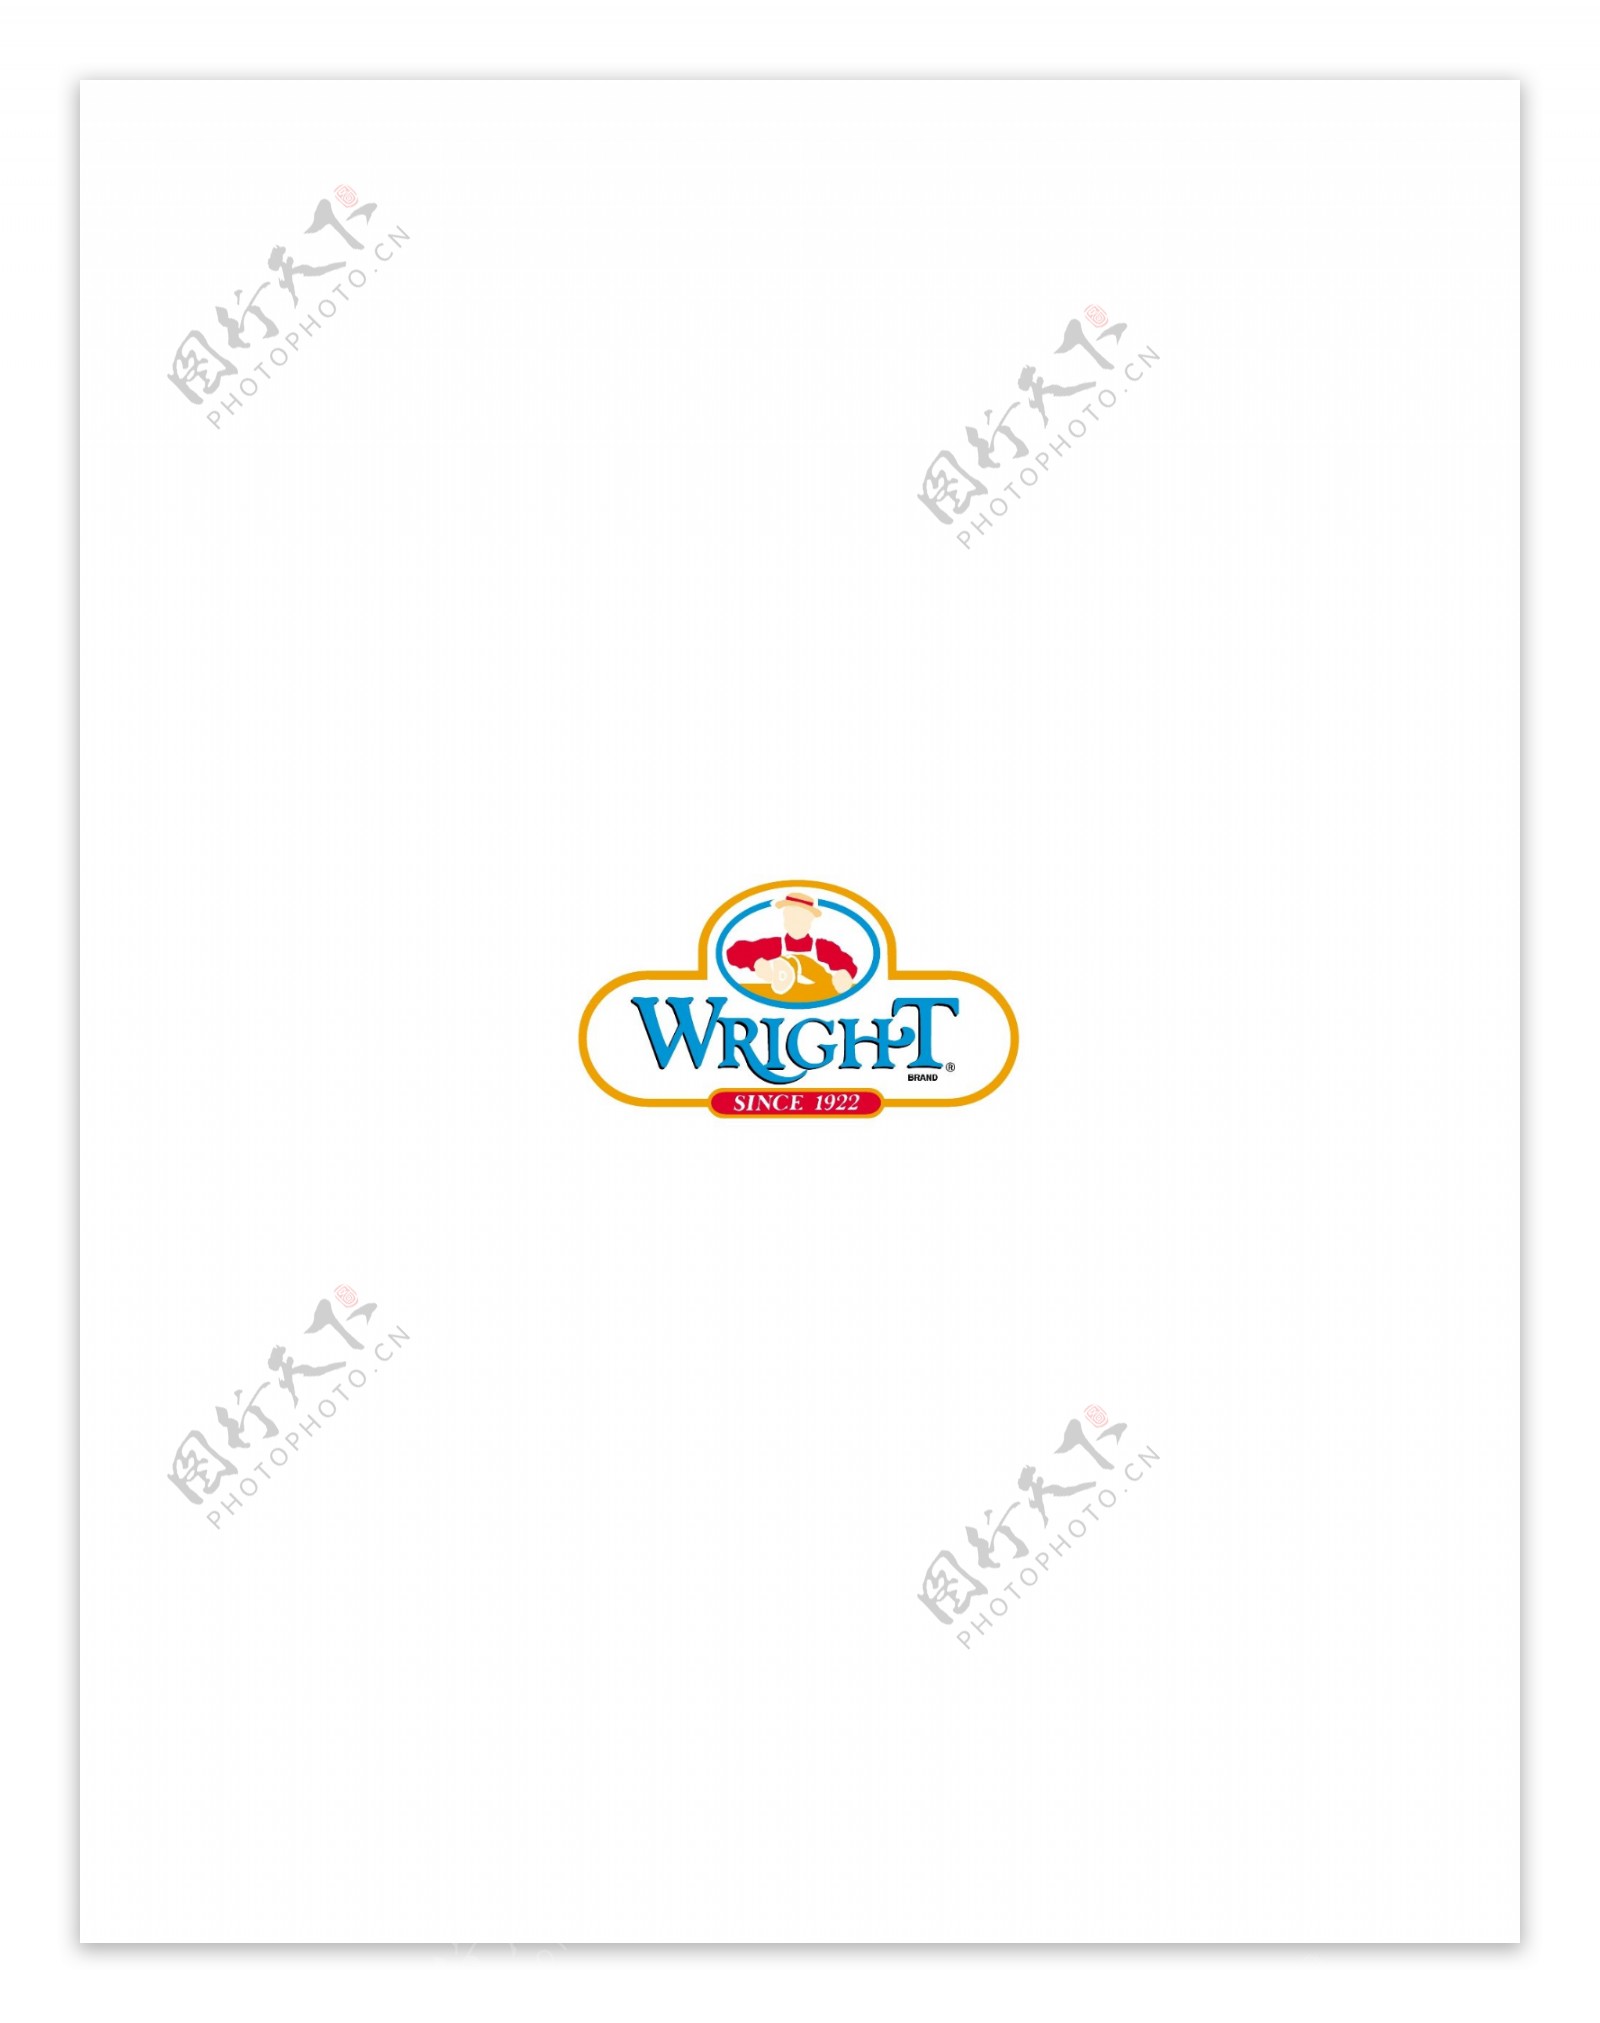 Wrightlogo设计欣赏Wright知名餐馆标志下载标志设计欣赏